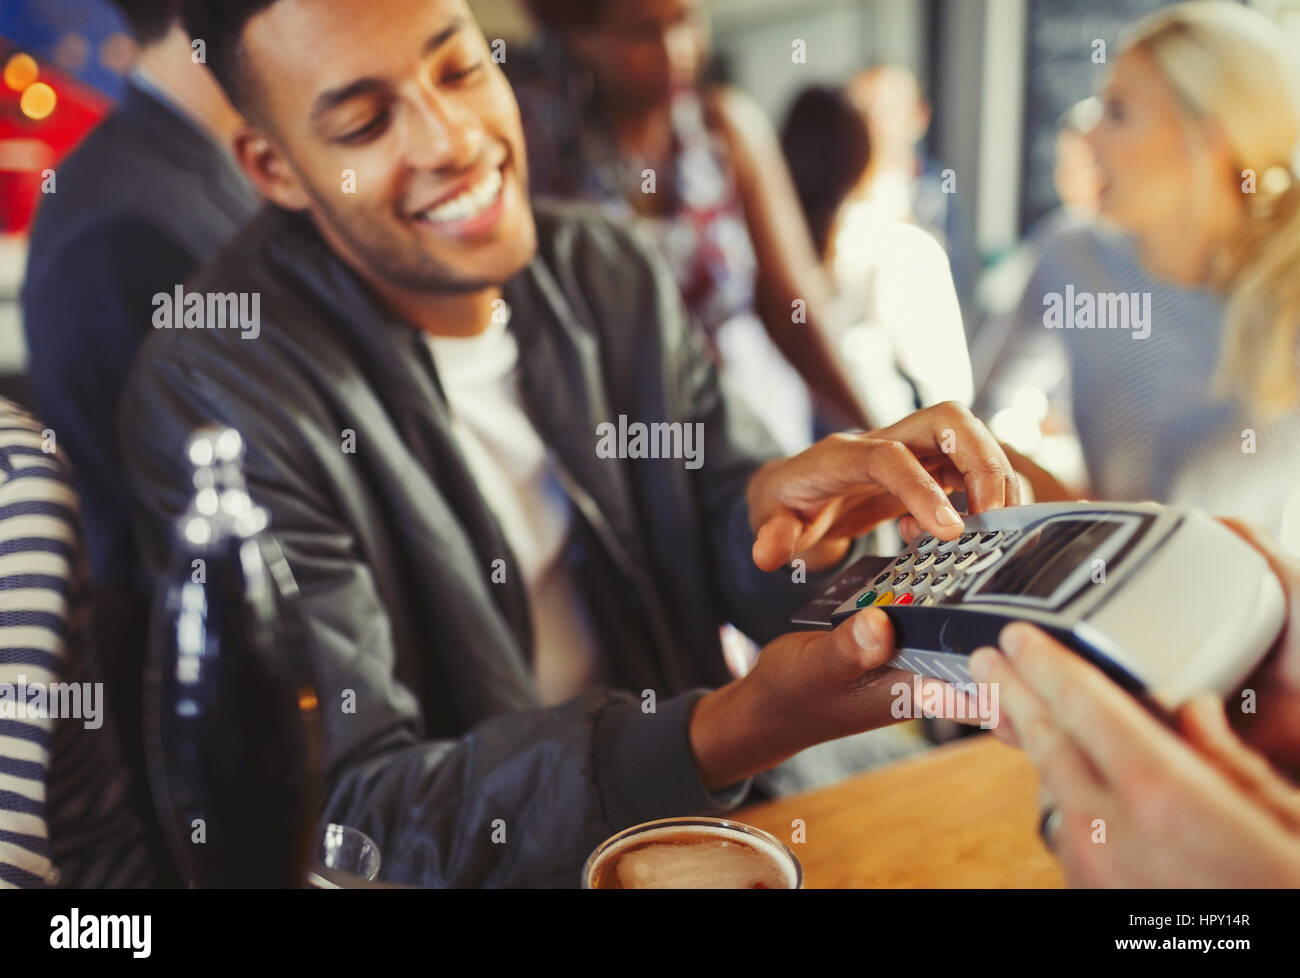 Smiling man paying bartender using credit card reader at bar Stock Photo